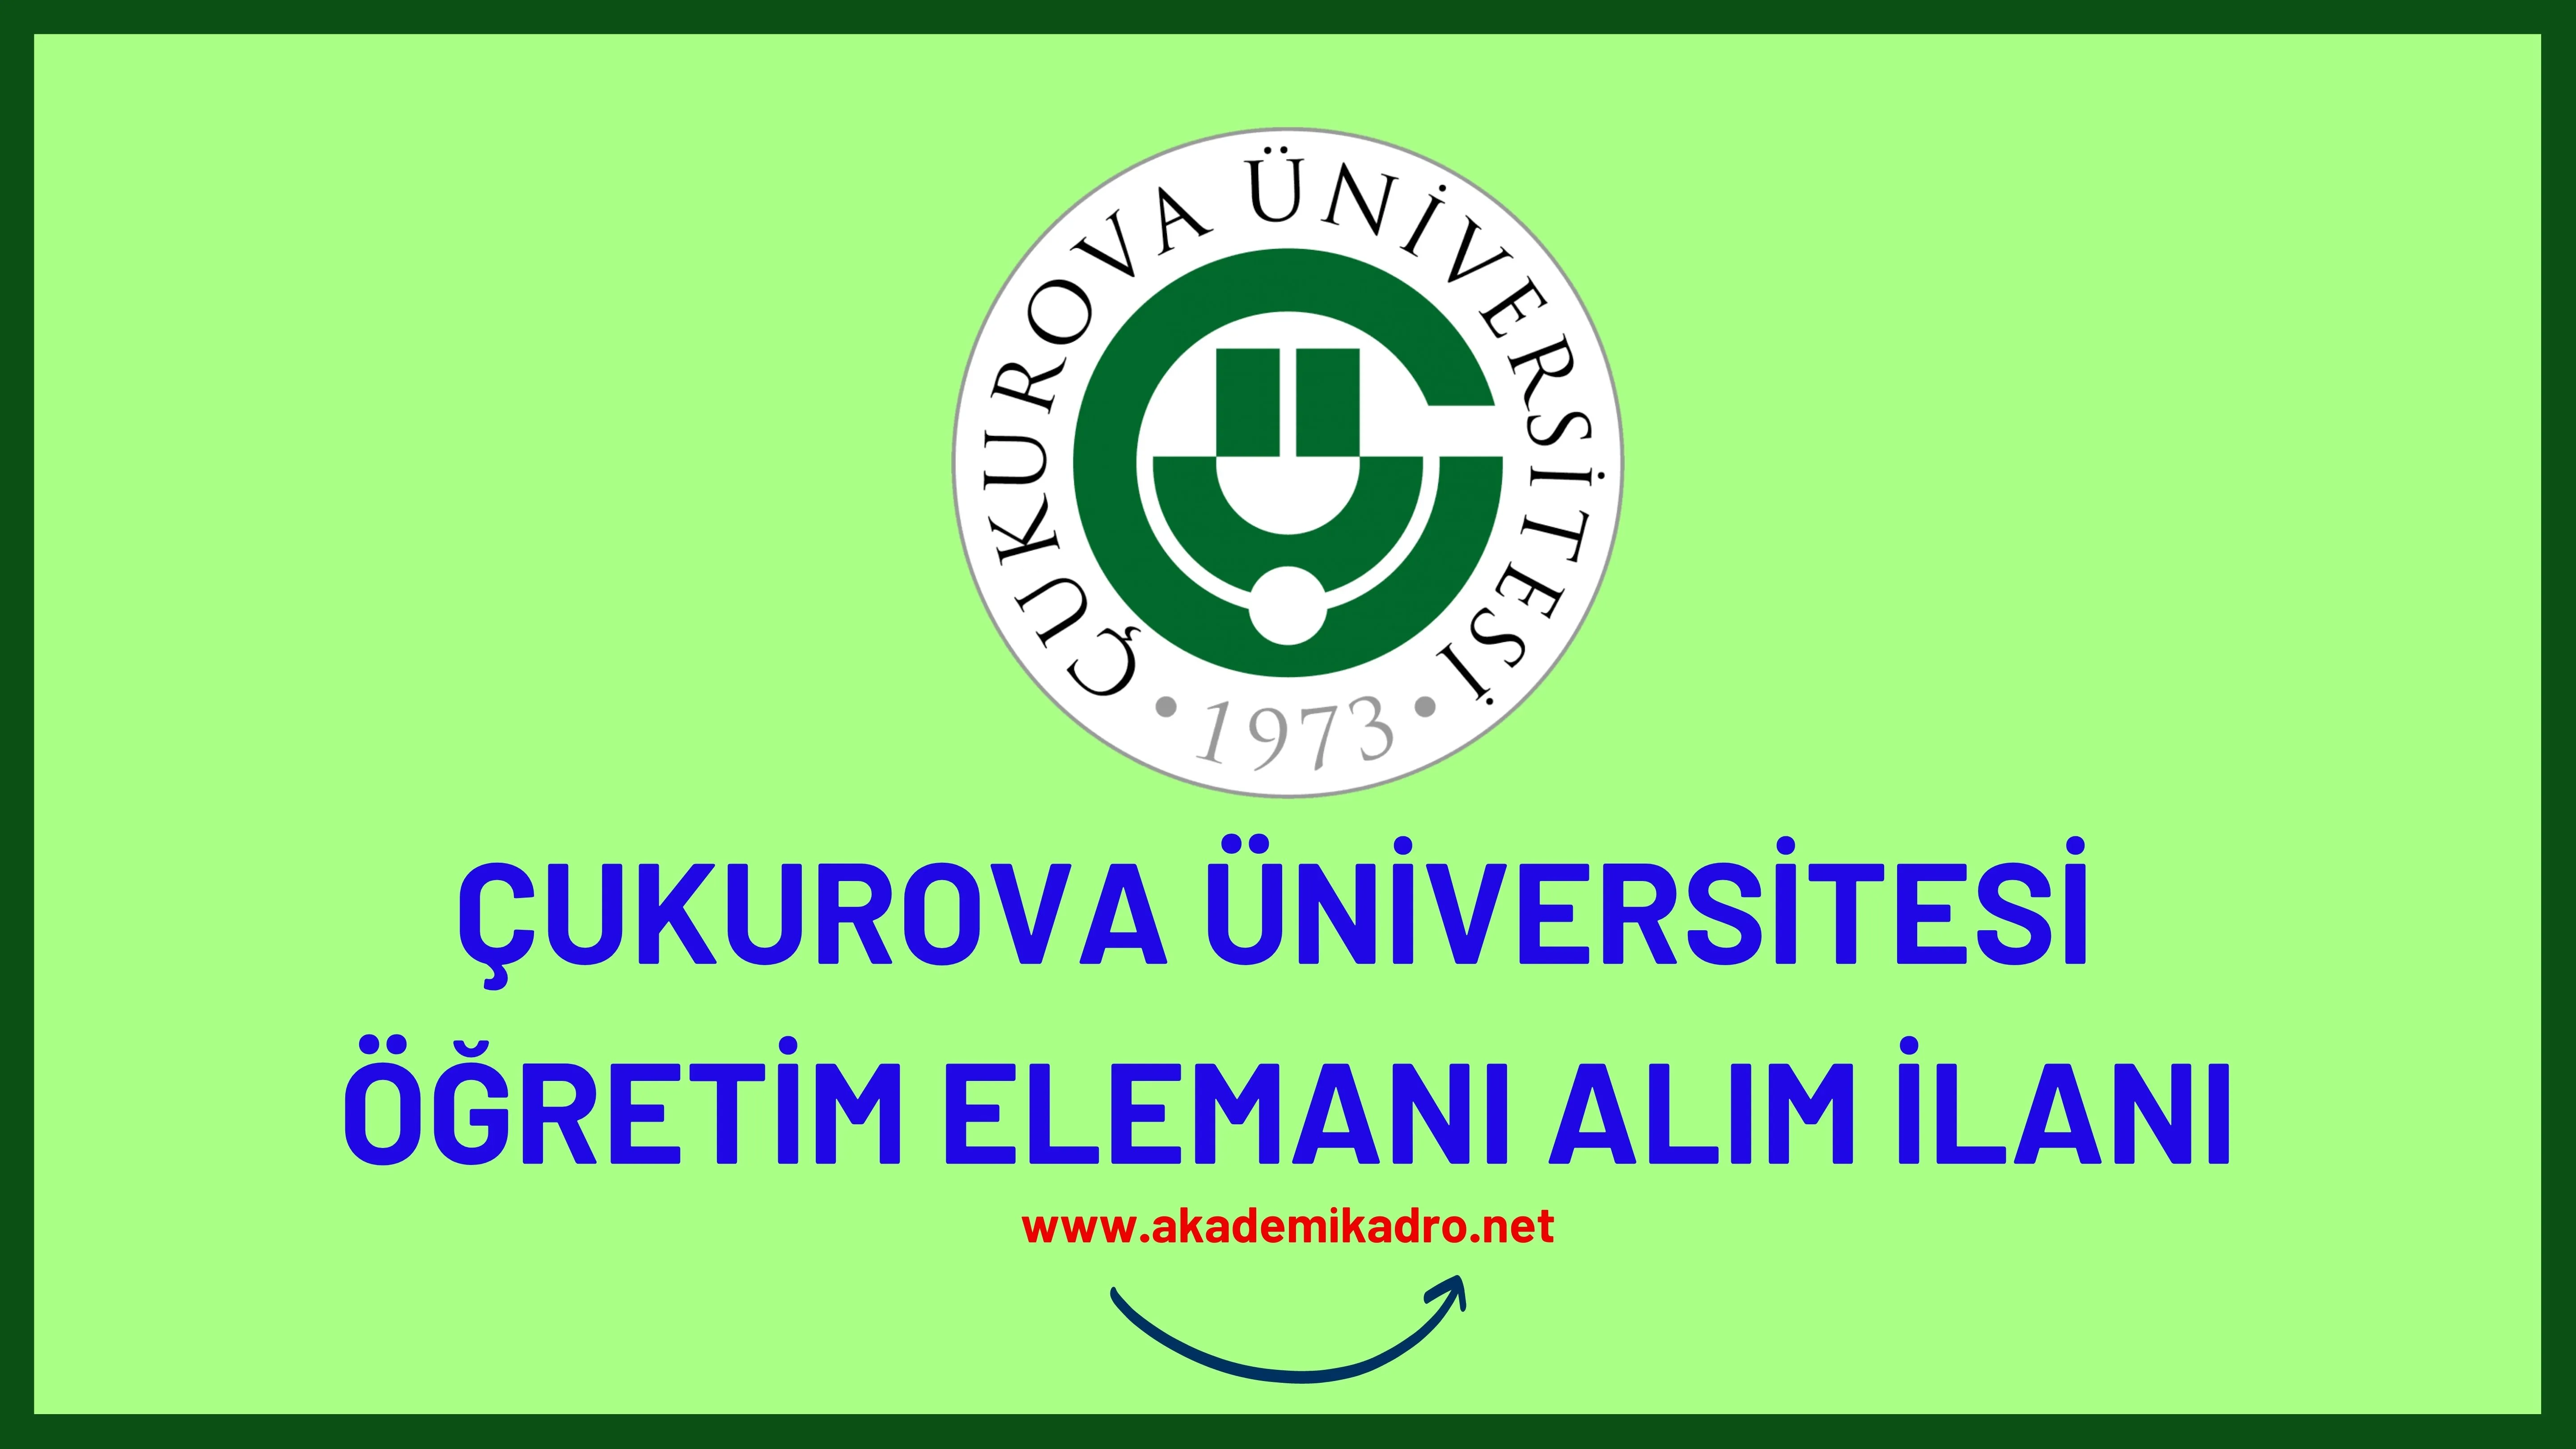 Çukurova Üniversitesi 7 Öğretim Görevlisi, 3 Araştırma görevlisi ve 24 öğretim üyesi alacaktır.